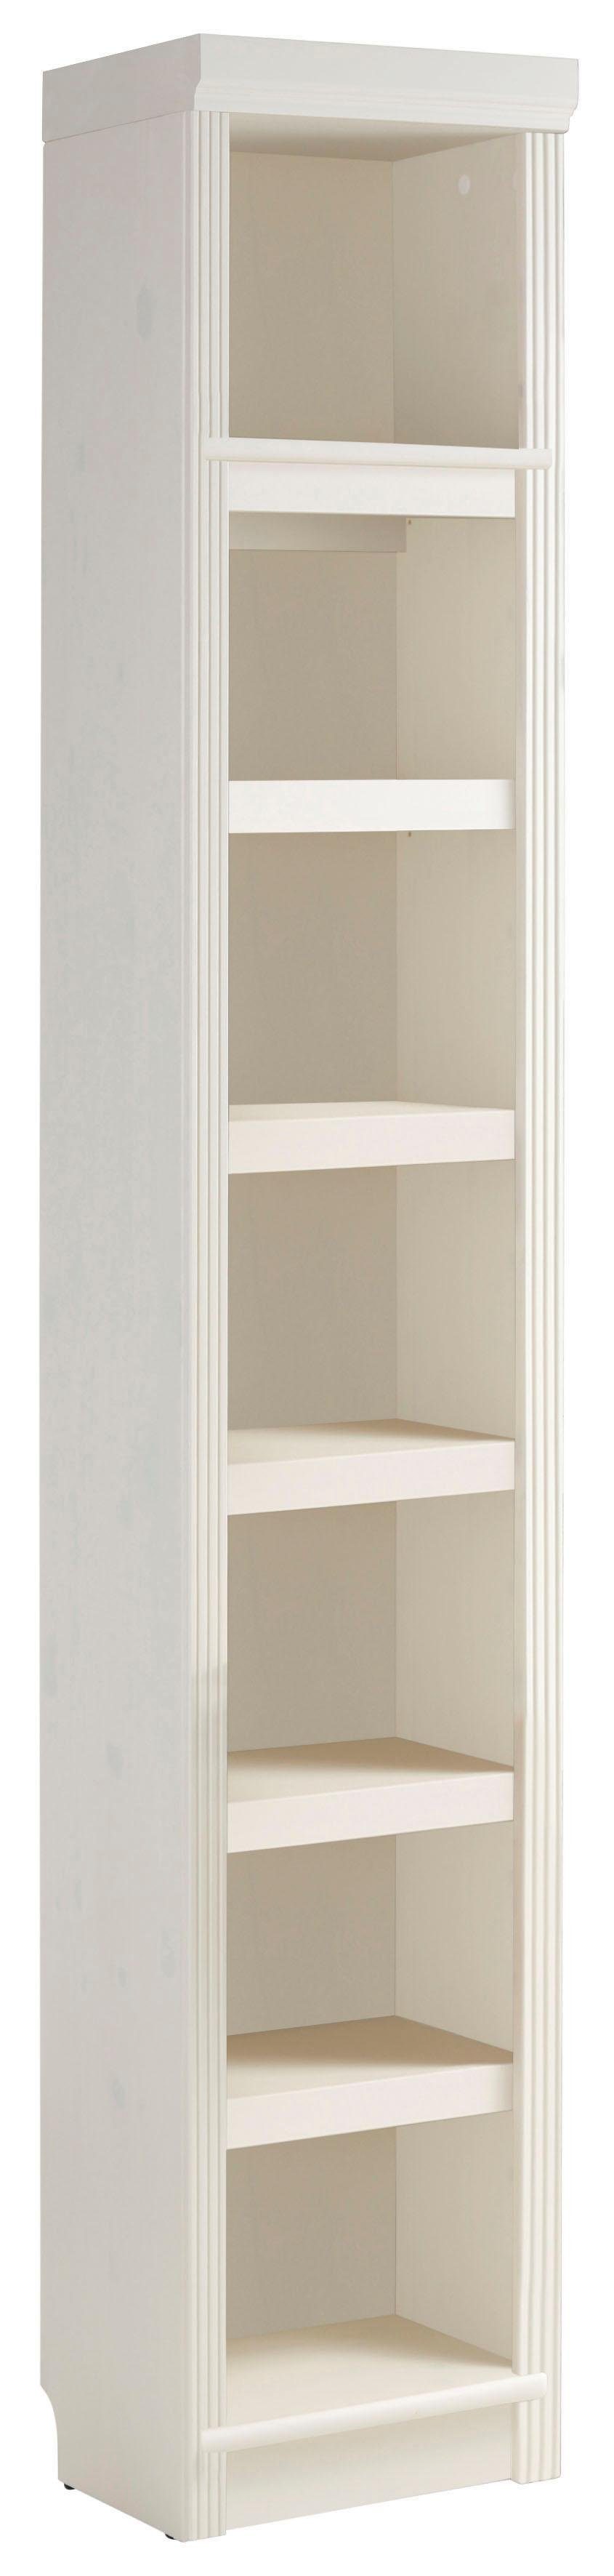 Home affaire Bücherregal Soeren, aus massiver Kiefer, in 2 Höhen, Tiefe 29 cm, mit viel Stauraum weiß